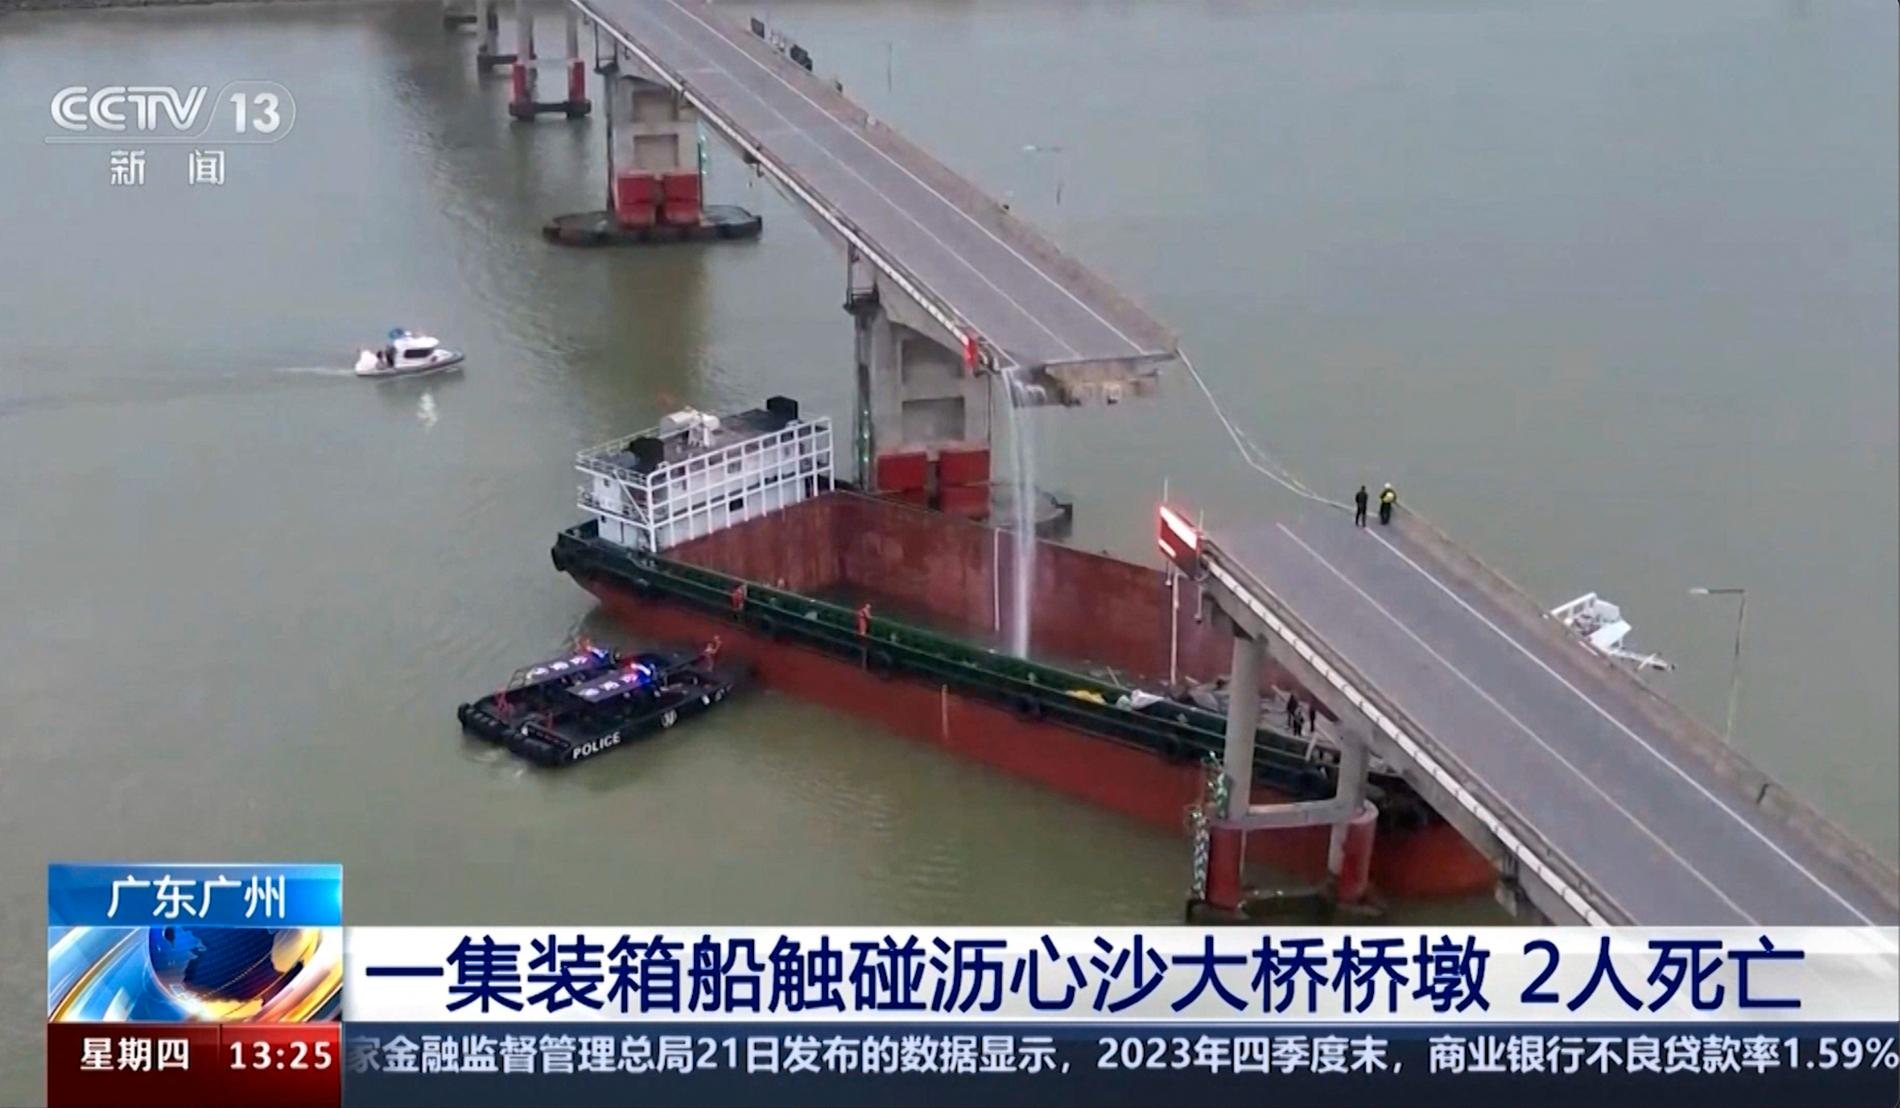 En stor bit av Lixinshabron rasade och med den flera fordon när ett stort lastfartyg körde in i bropelarna i Guangzhou i södra Kina. Bilden kommer från den statliga kinesiska tv-kanalen CCTV.